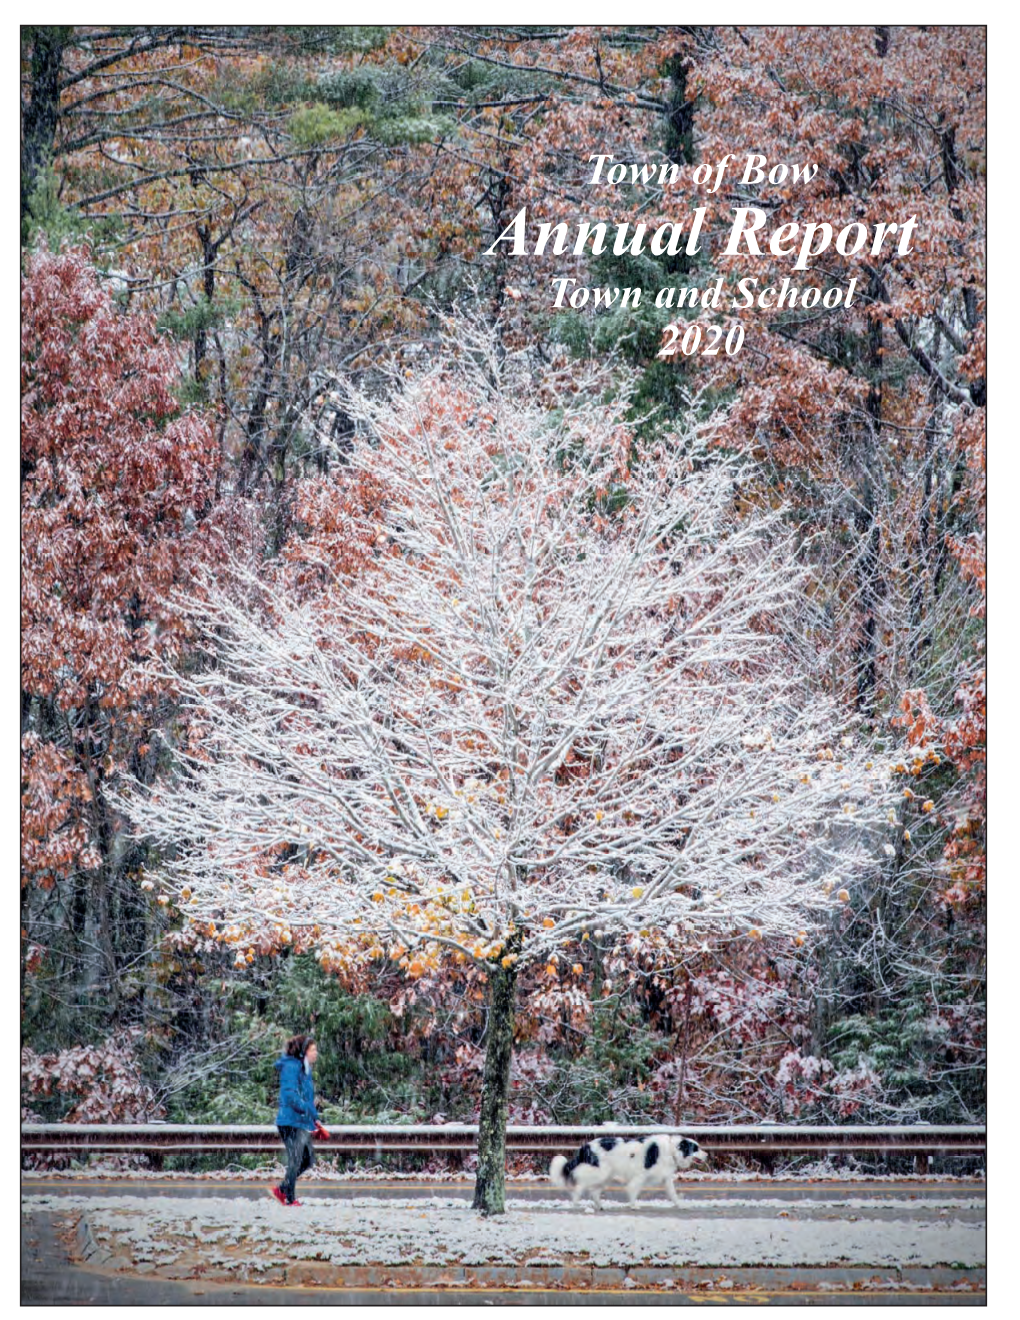 Annual Report Report Annual